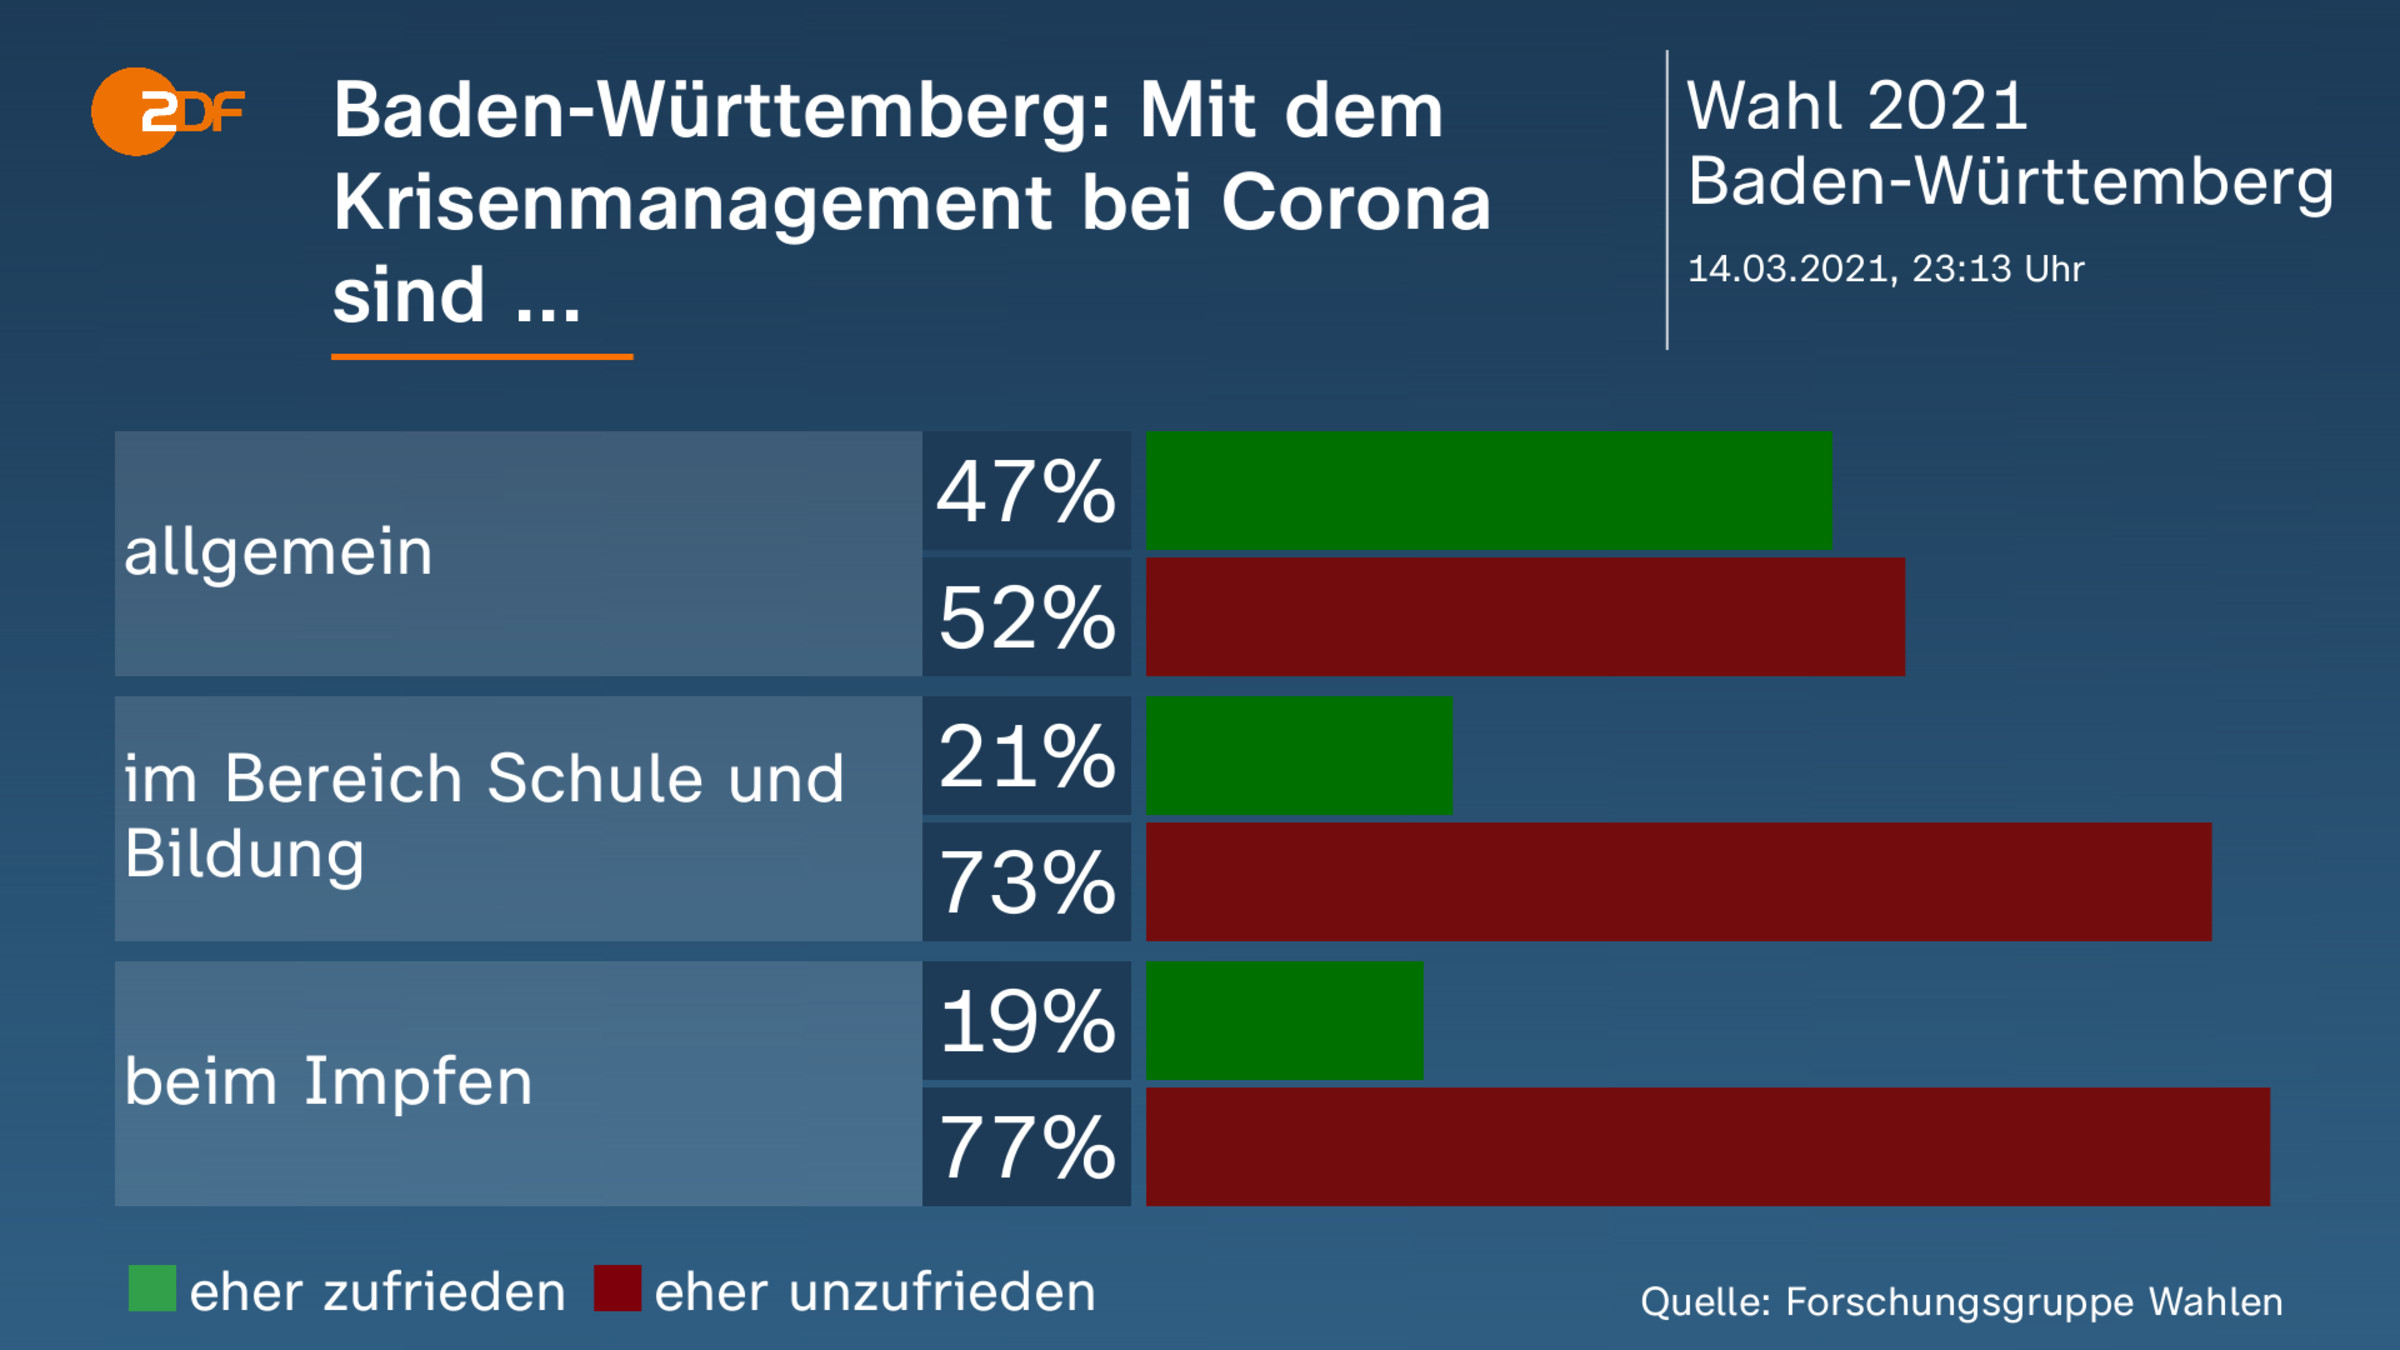 Baden-Württemberg: Mit dem Krisenmanagement bei Corona sind ... 